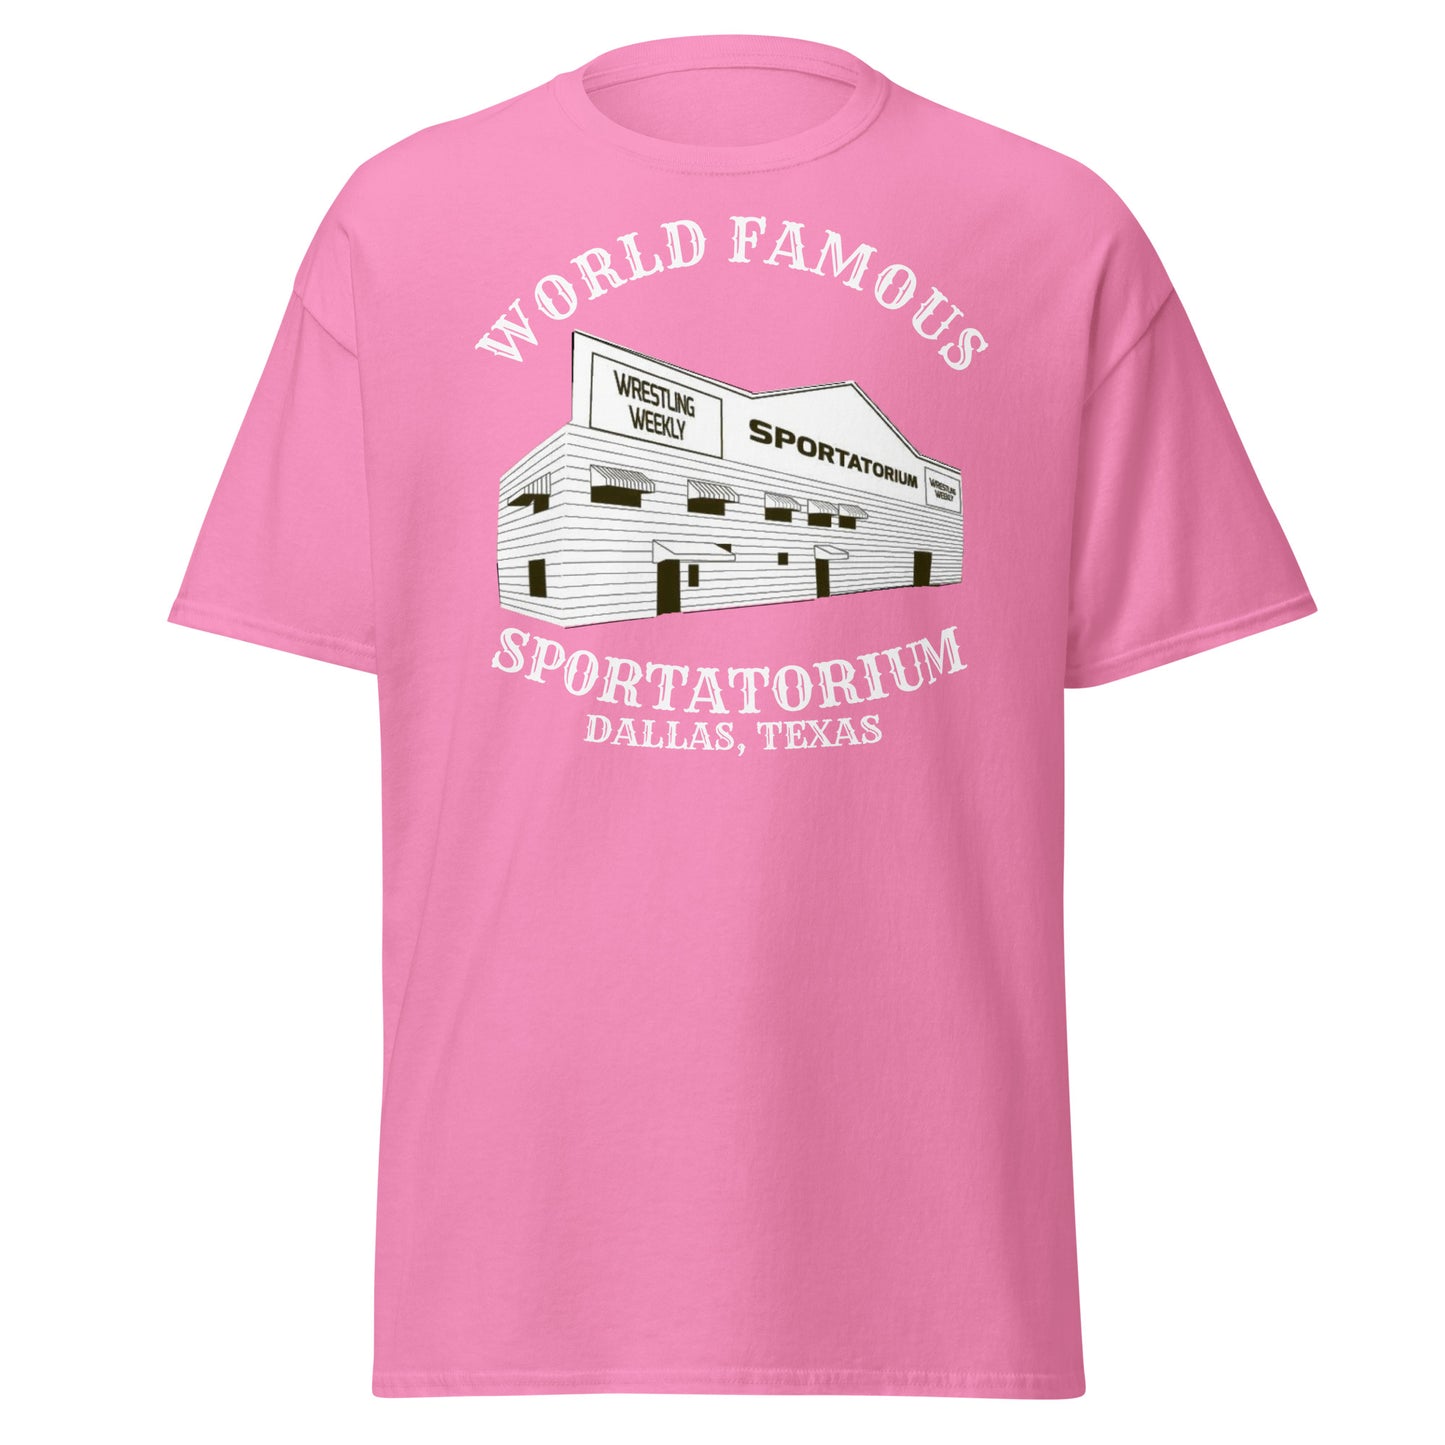 World Famous Sportatorium Tee (white text)